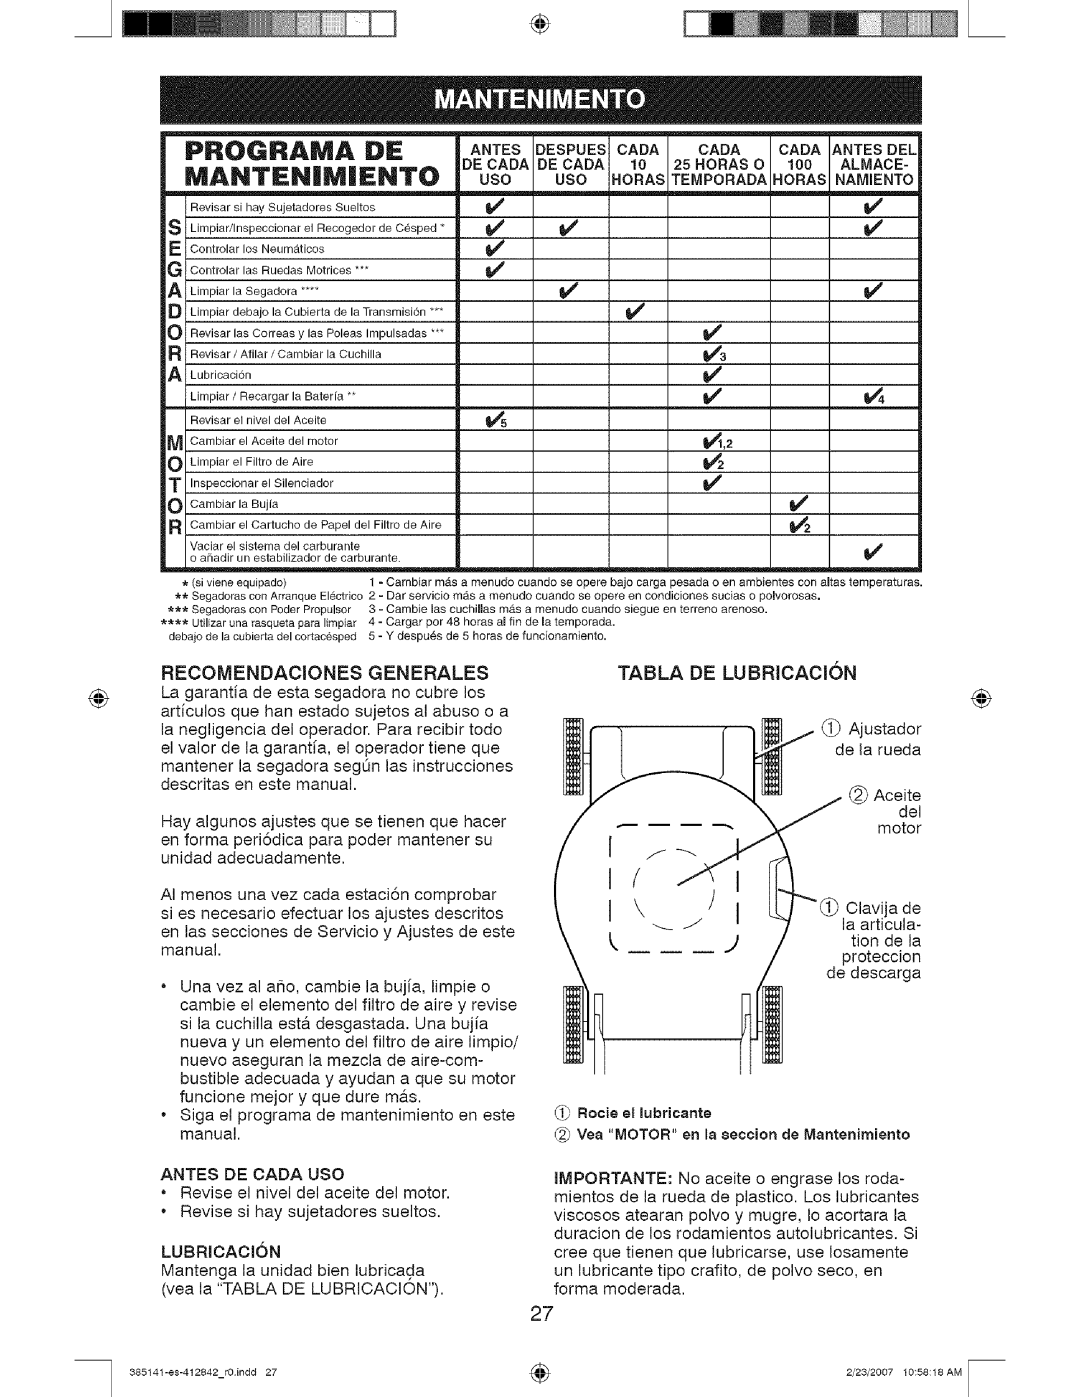 Craftsman 141, 385 owner manual PROGRAIVlA, Manten|Miento, Recomendaciones Generales 